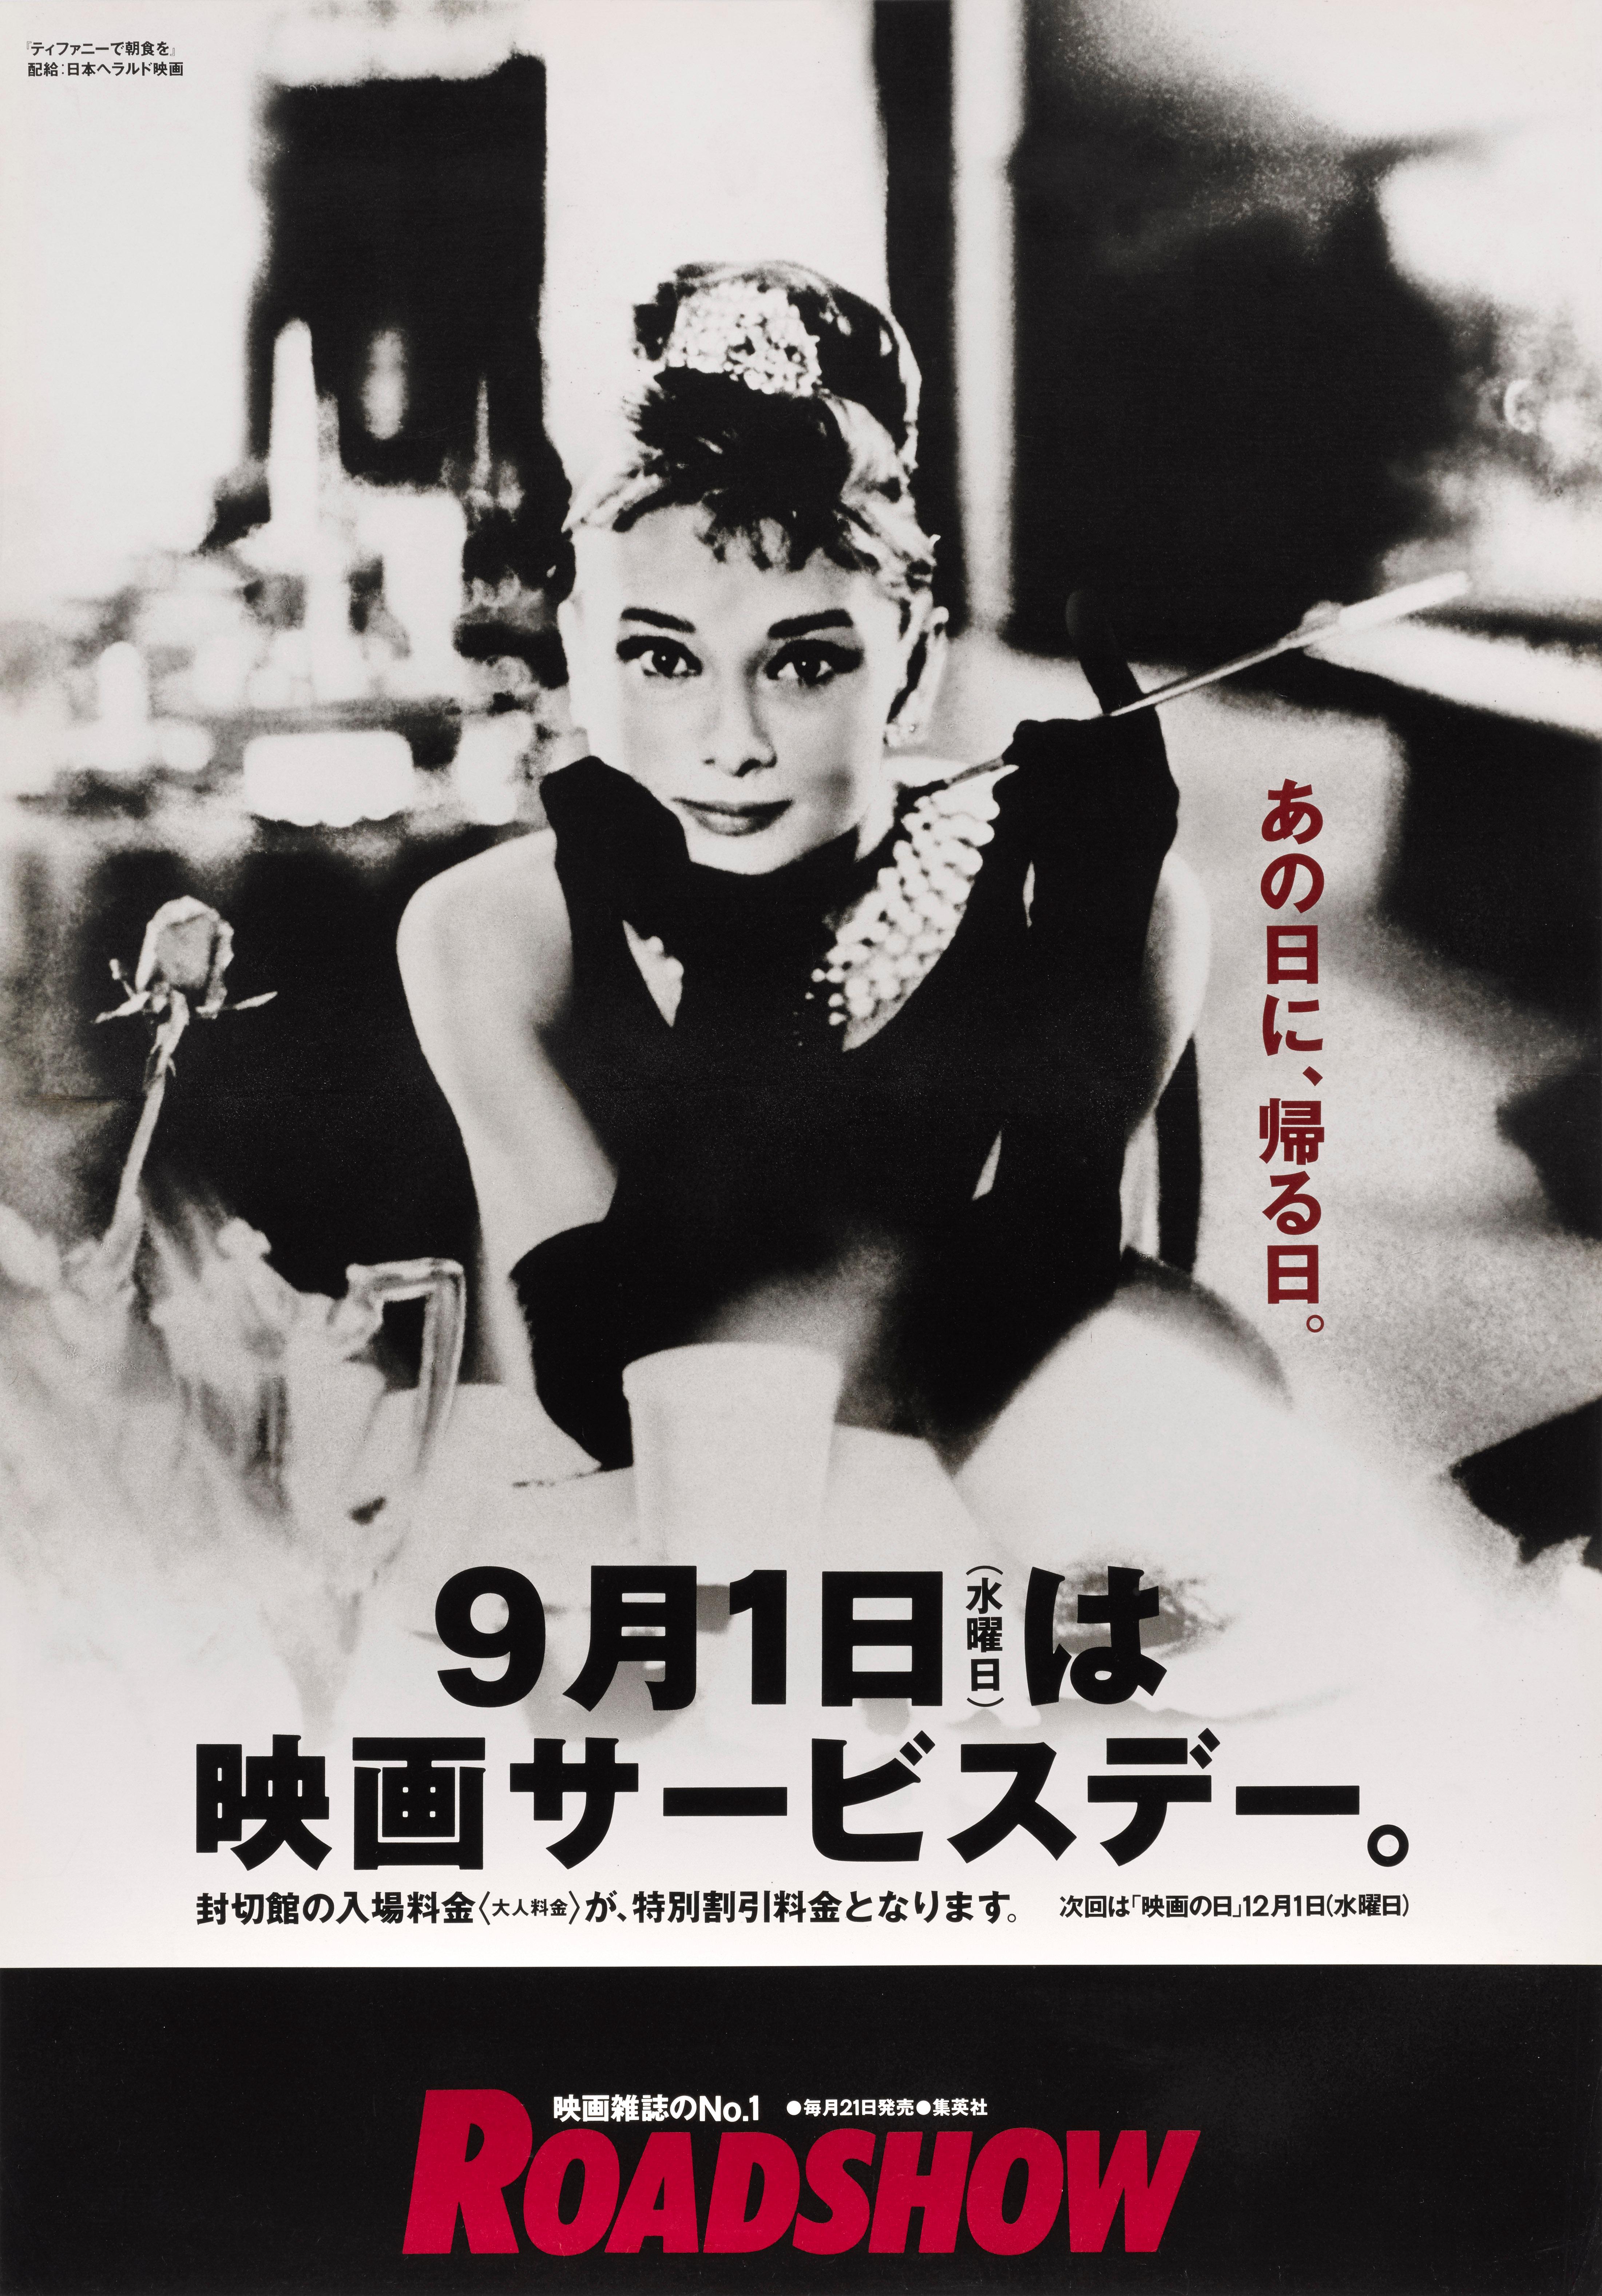 Affiche de film japonaise originale pour le film classique de 1961 d'Audrey Hepburn, réalisé par Blake Edwards et mettant en vedette George Peppard, Audrey Hepburn. Cette affiche a été conçue pour la réédition du film au Japon en 1990.